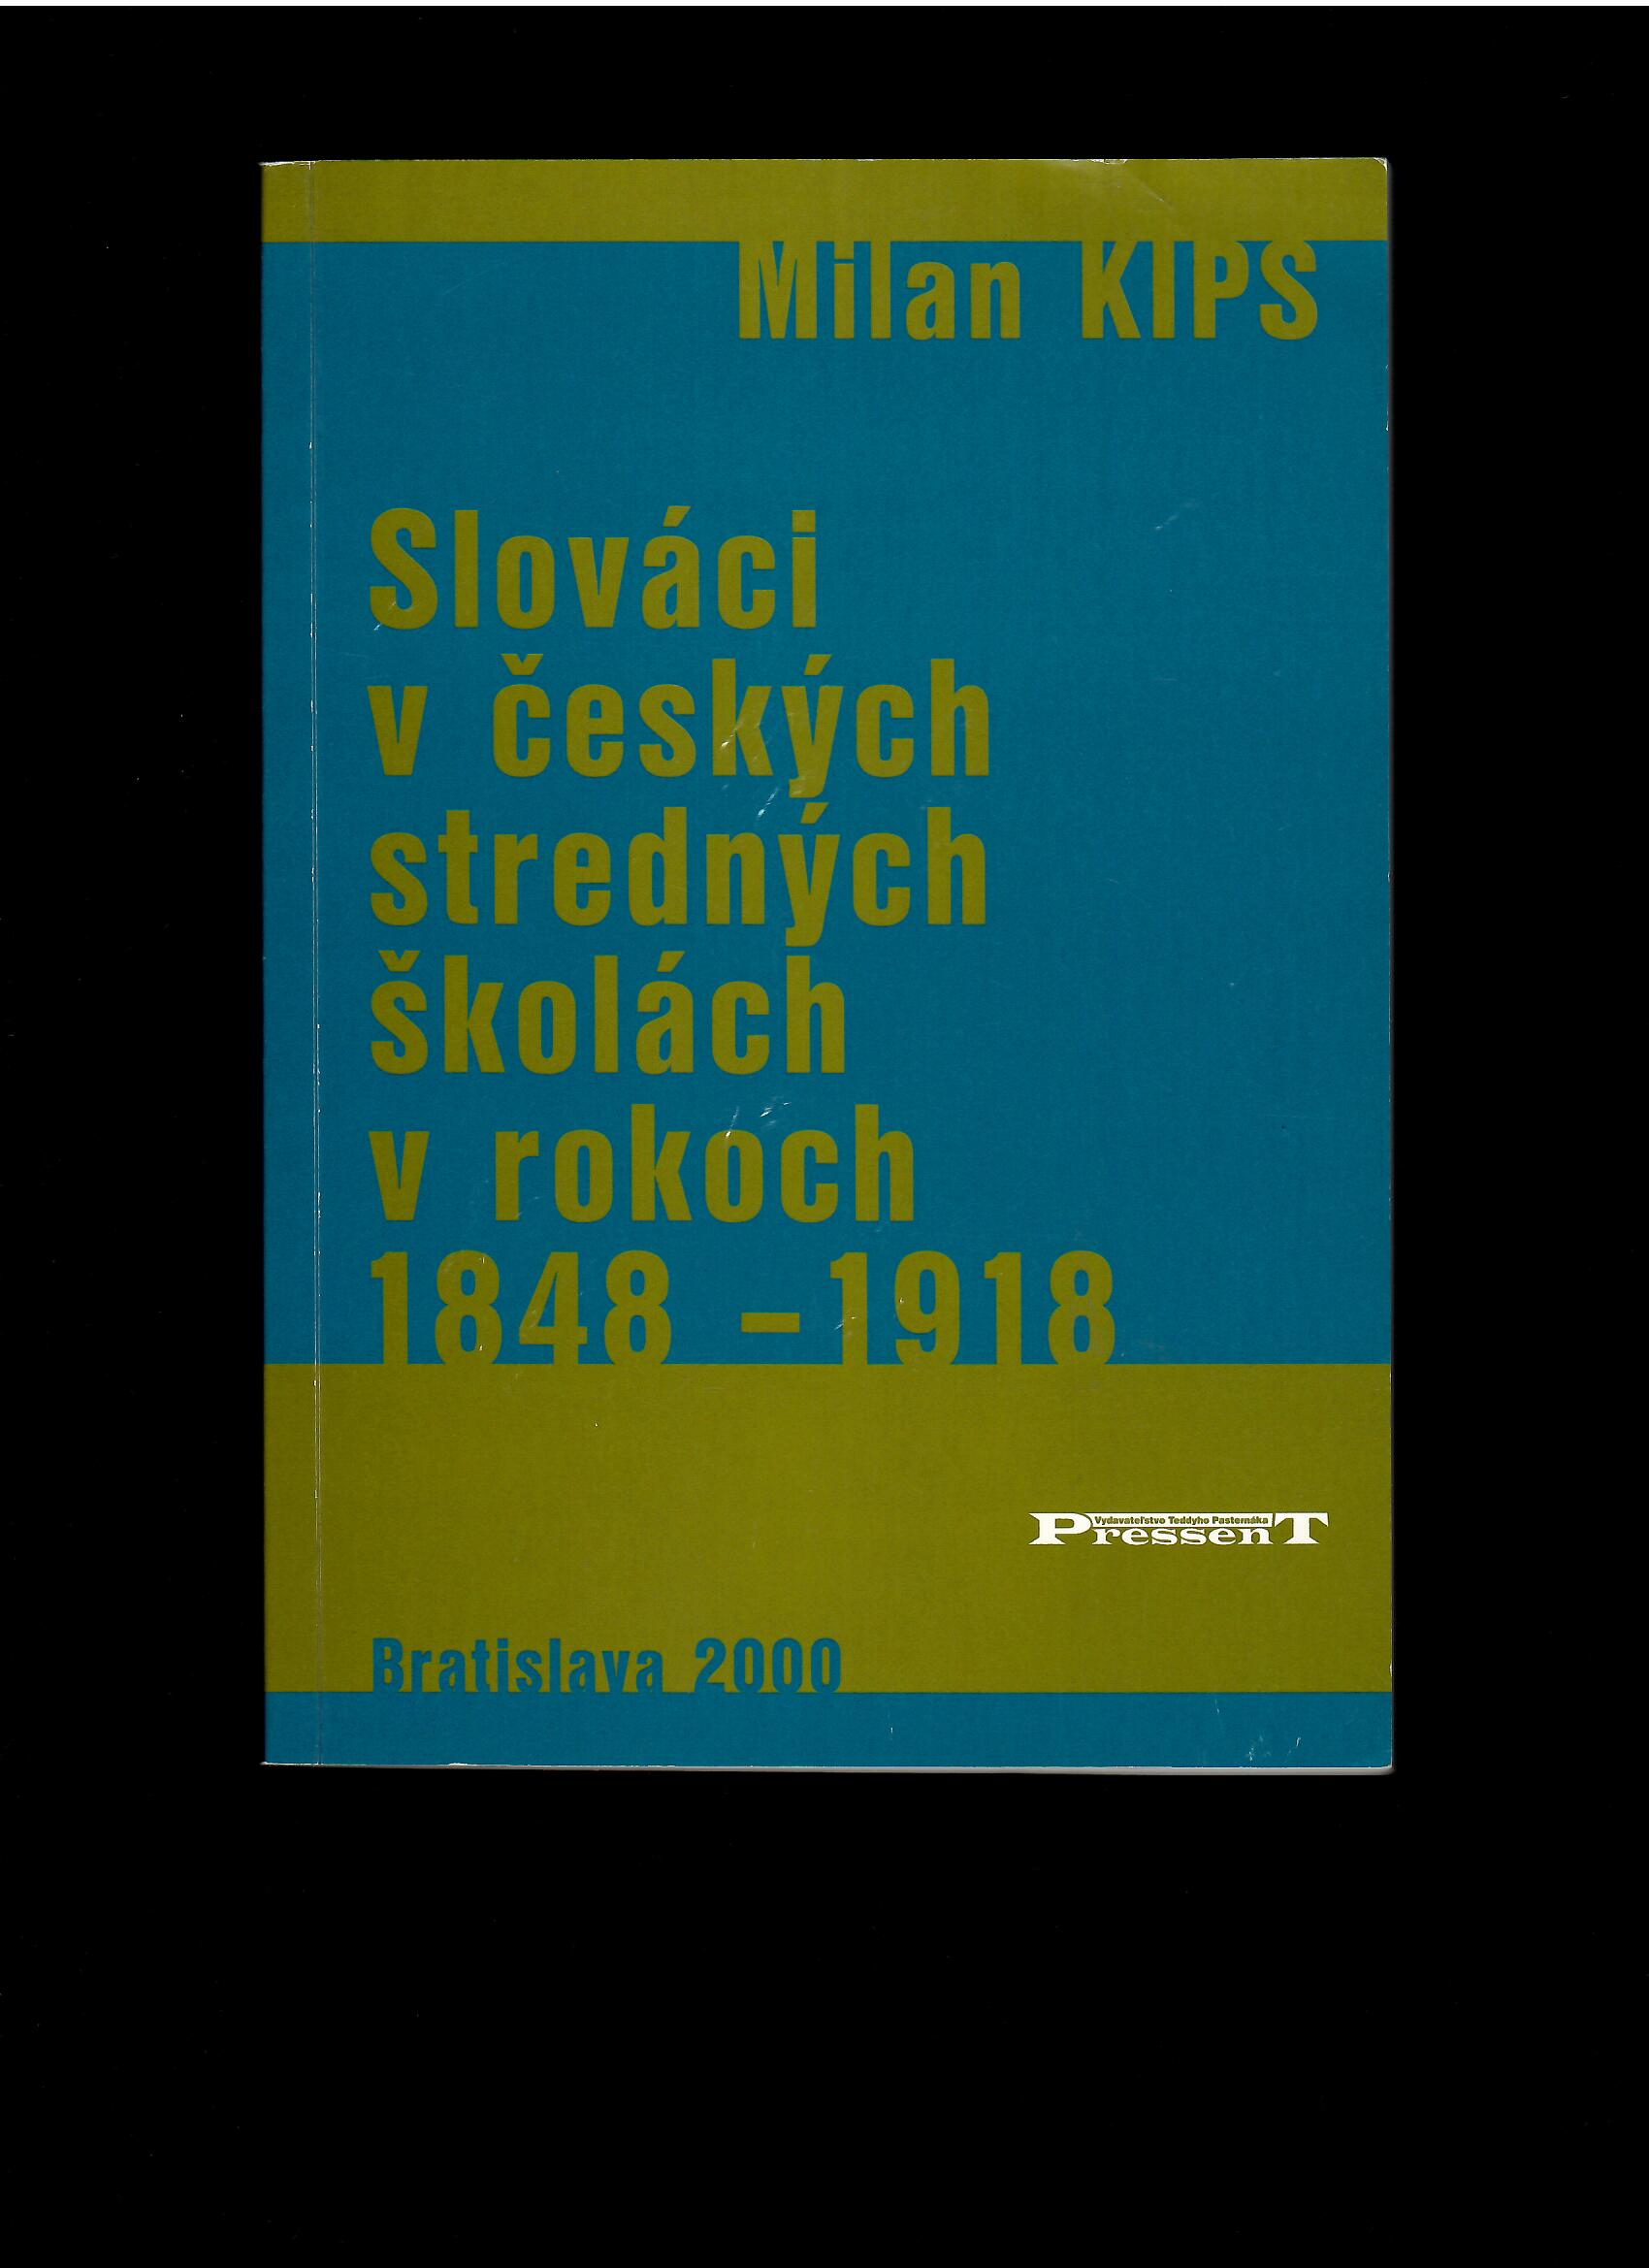 Milan Kips: Slováci v českých stredných školách v rokoch 1848-1918